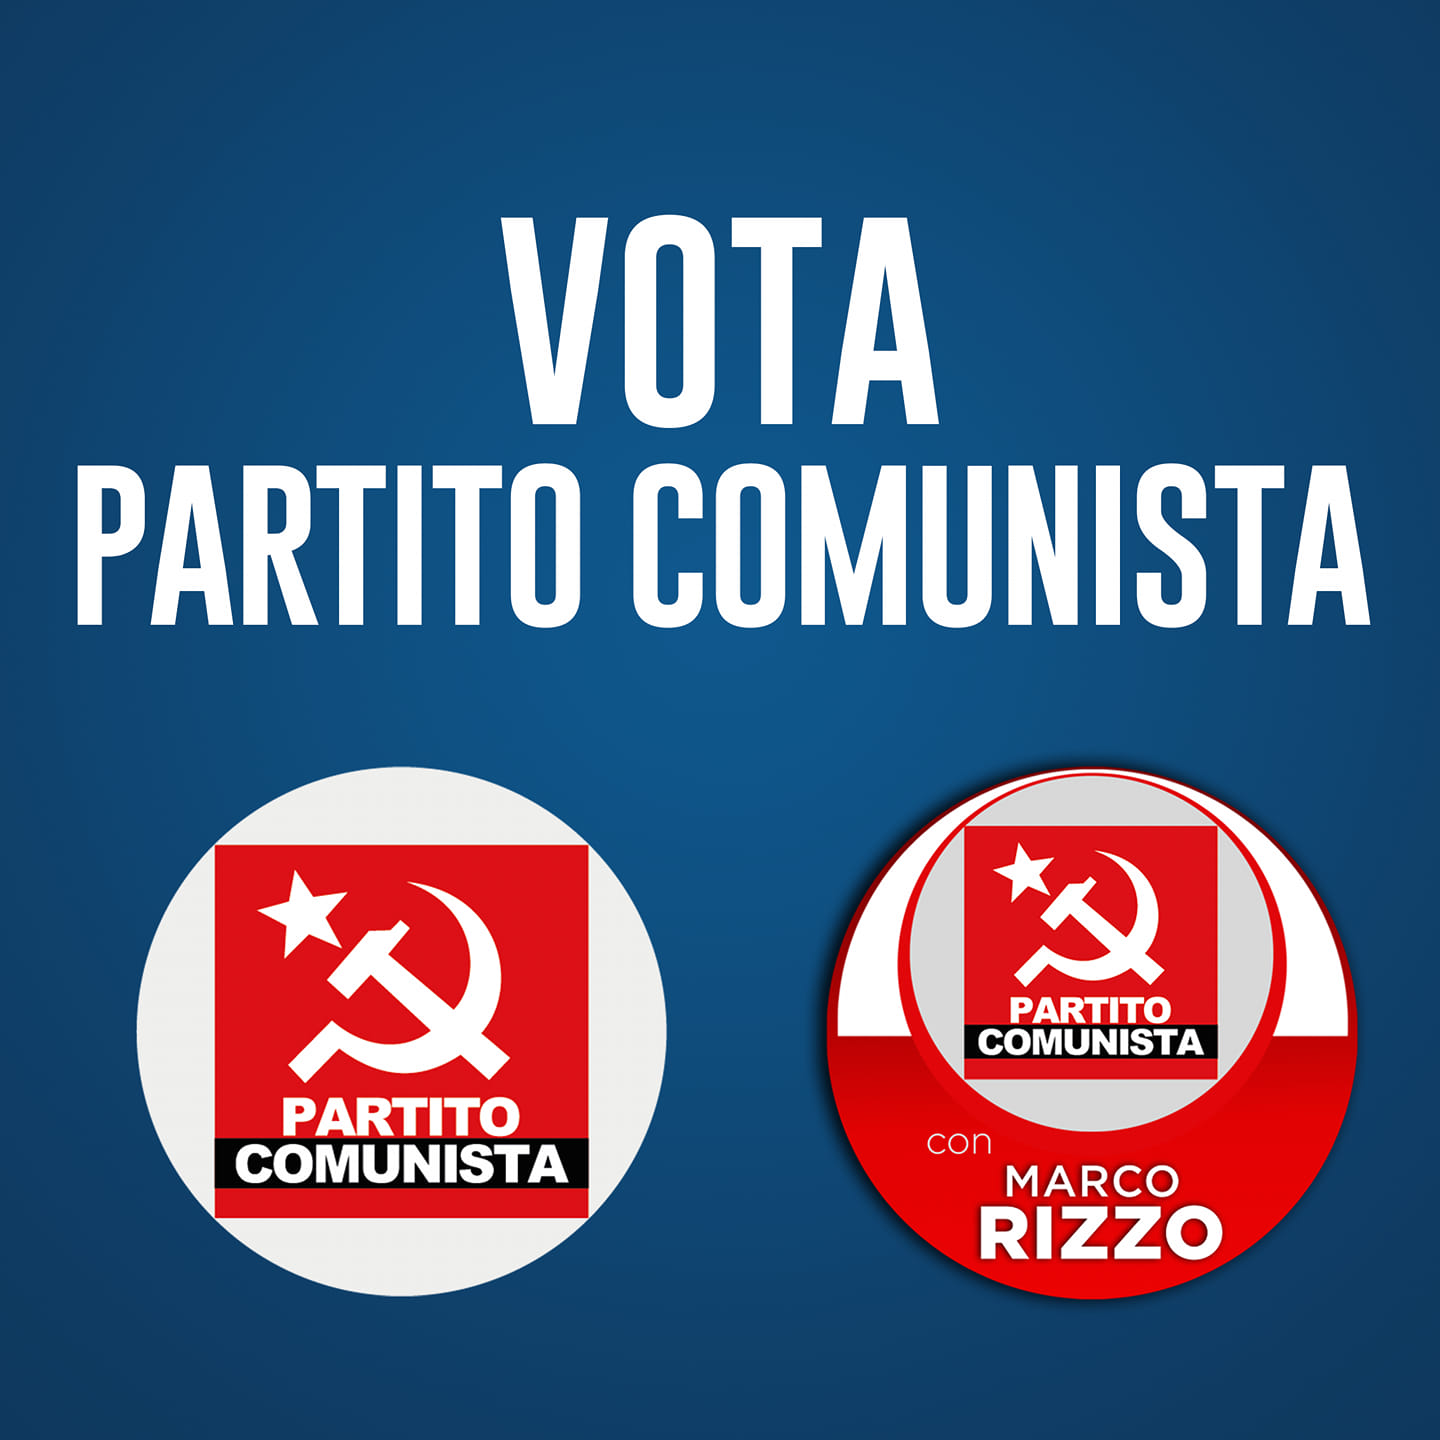 Percée du Parti communiste (PC) lors des élections législatives partielles en Italie